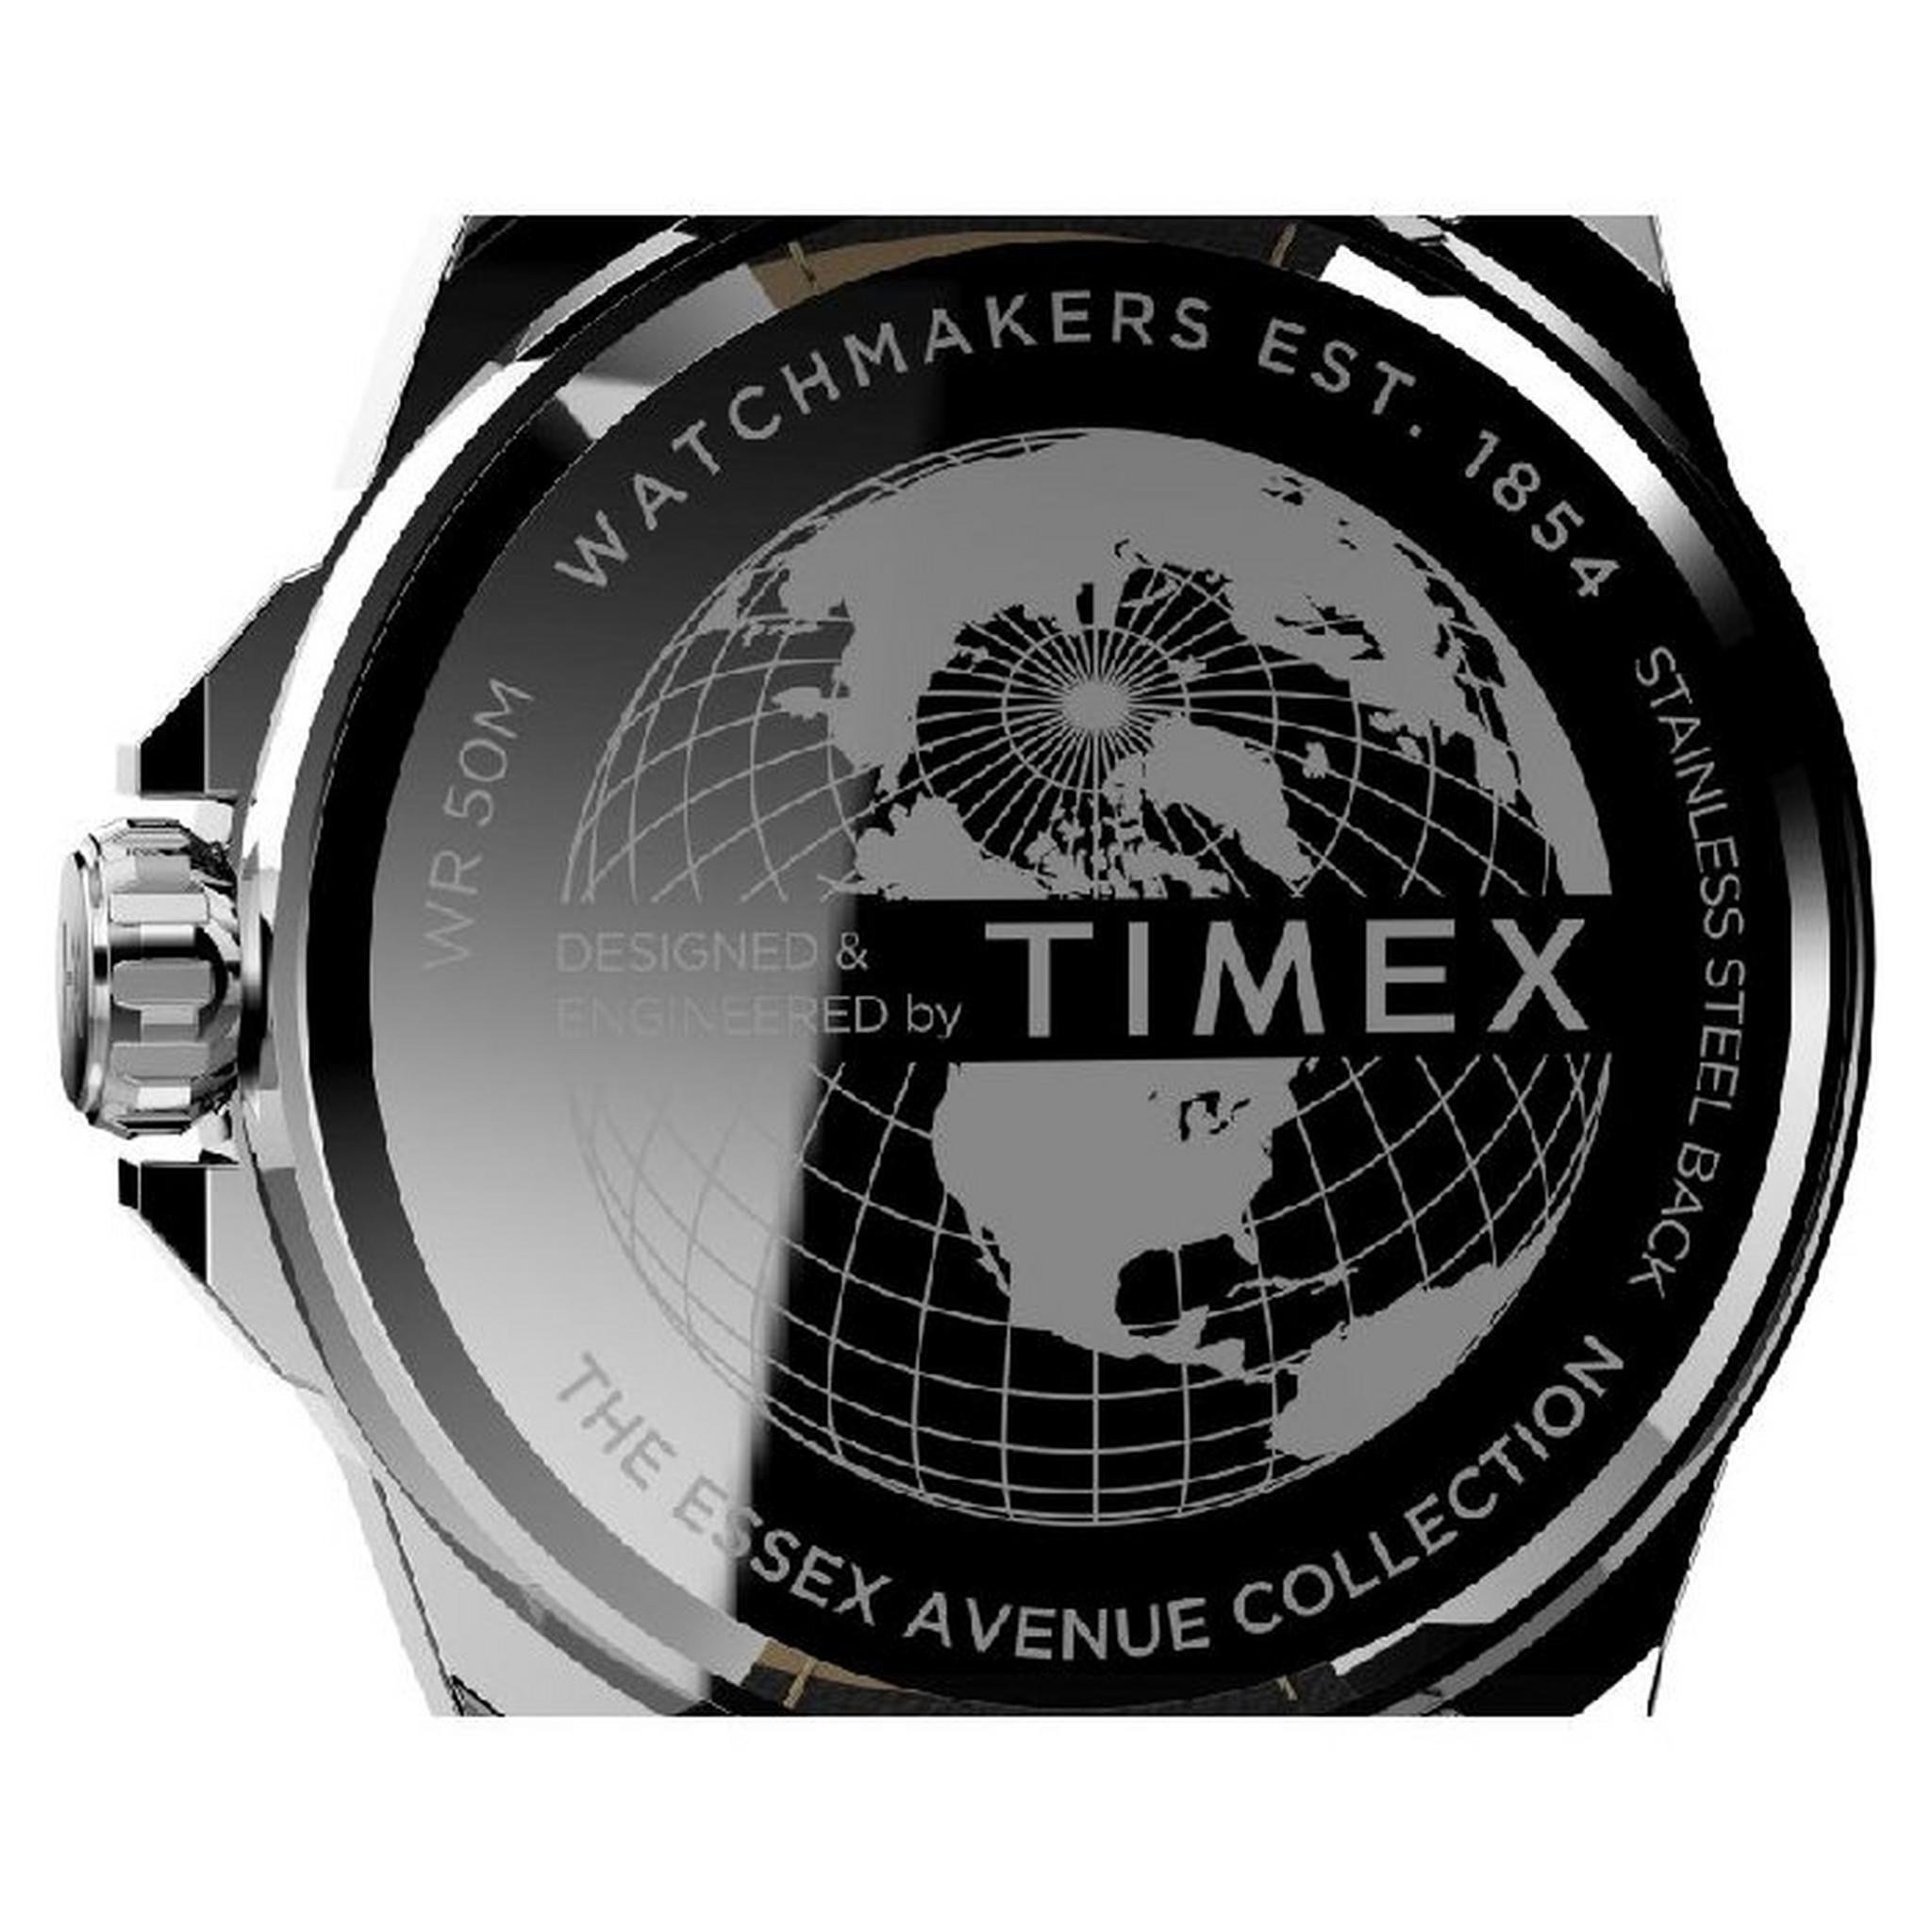 ساعة سيتي من تيميكس للرجال، انالوج، 44 مم، سوار جلد، TW2V43200 - أسود